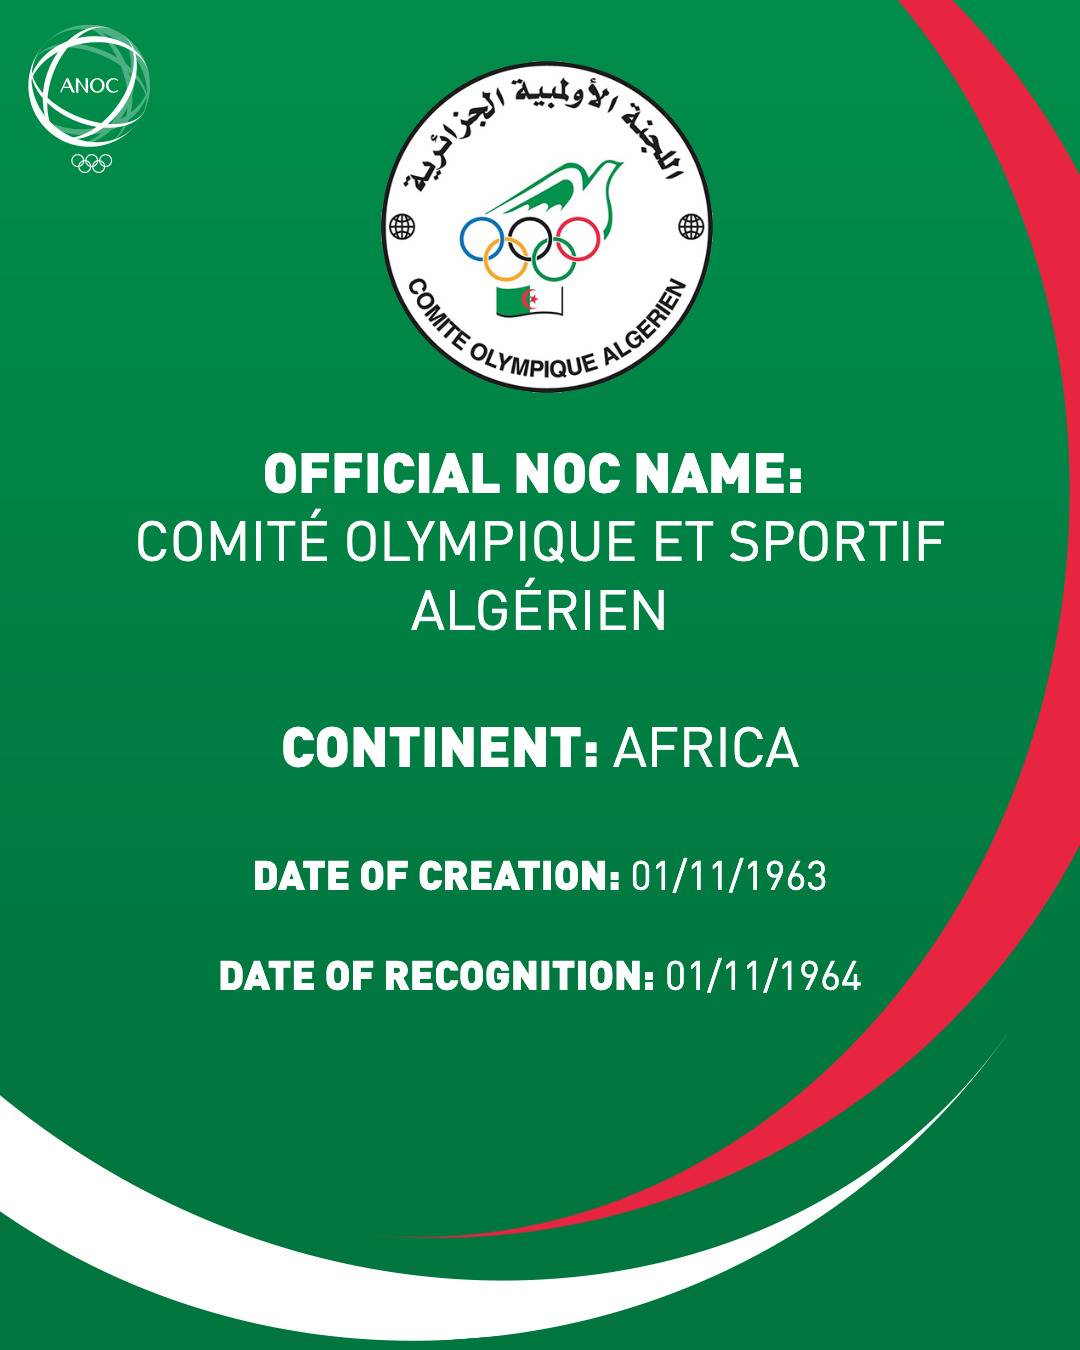 Comité Olympique et Sportif Algérien